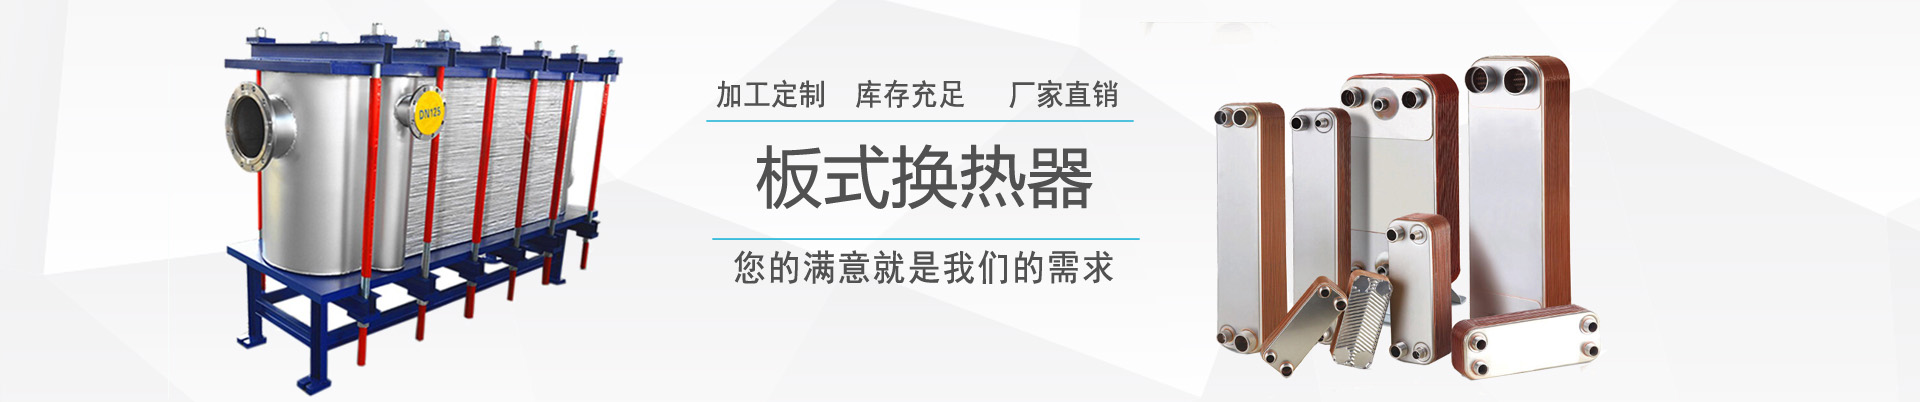 服務支持 - ,換熱器,板式換熱器,換熱器機組,上海將星化工設備有限公司